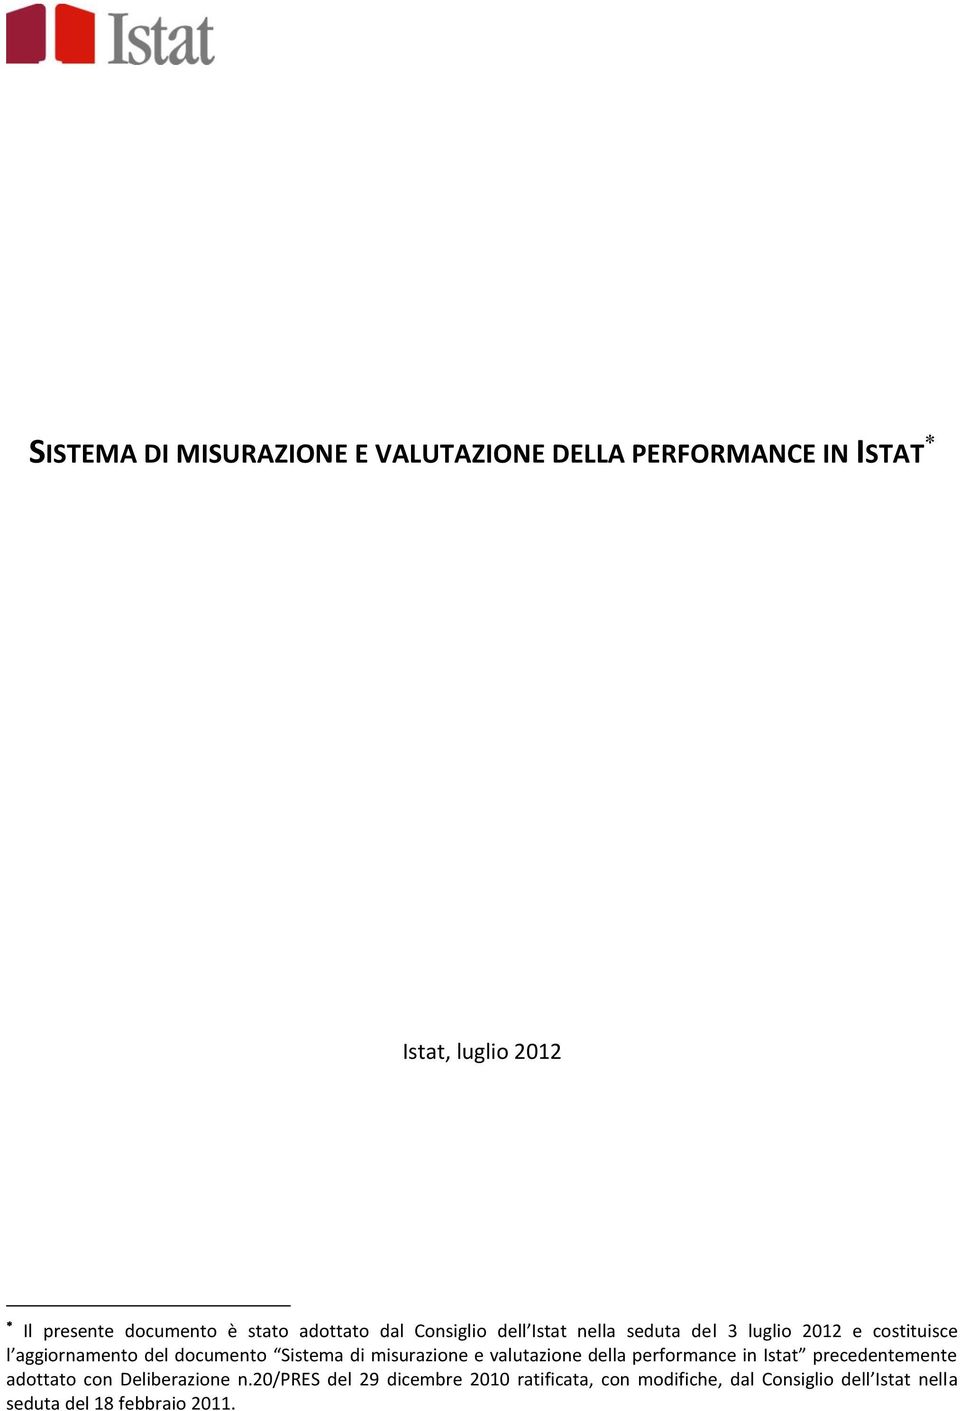 documento Sistema di misurazione e valutazione della performance in Istat precedentemente adottato con